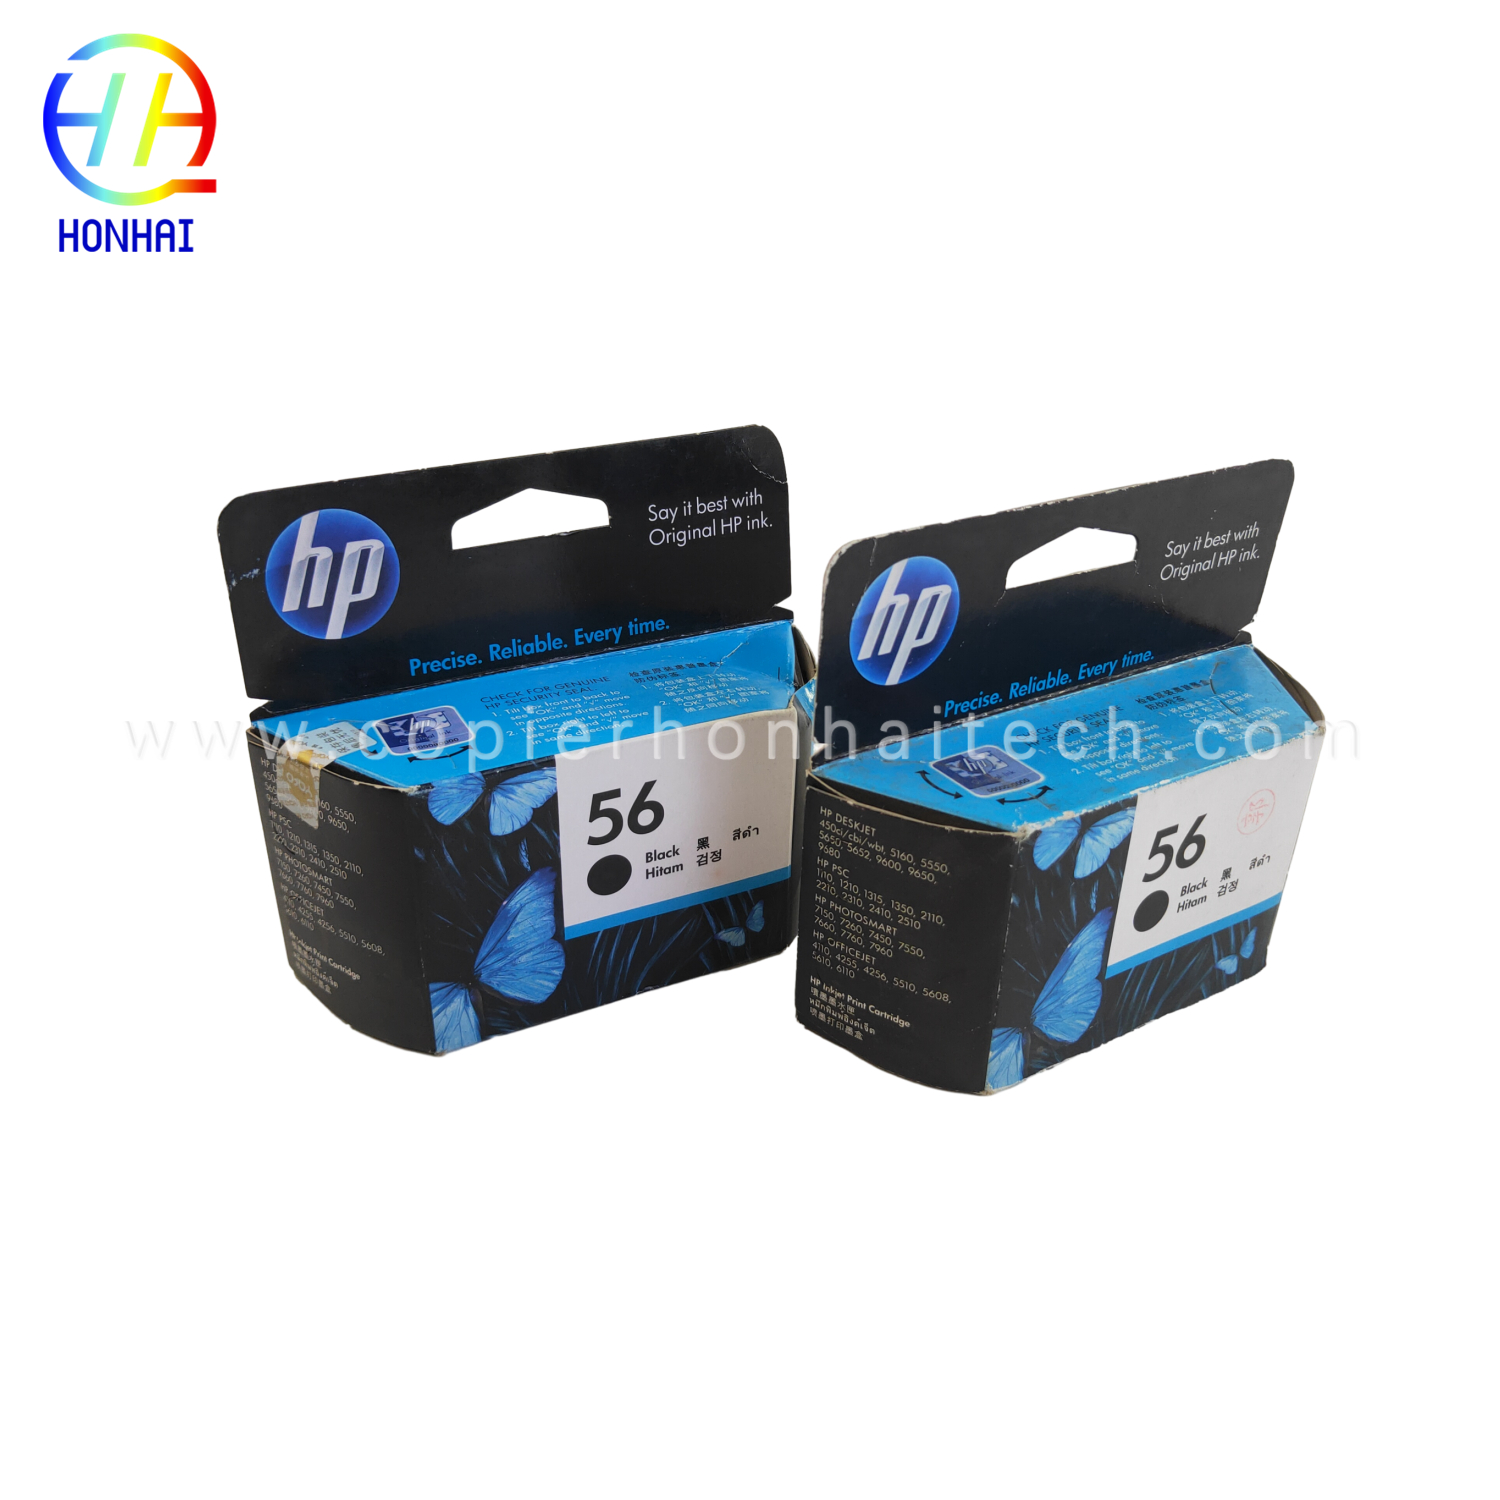 https://www.copierhonhaitech.com/original-black-printer-ink-cartridge-56-for-hp-deskjet-5550-5551-5552- önüm /